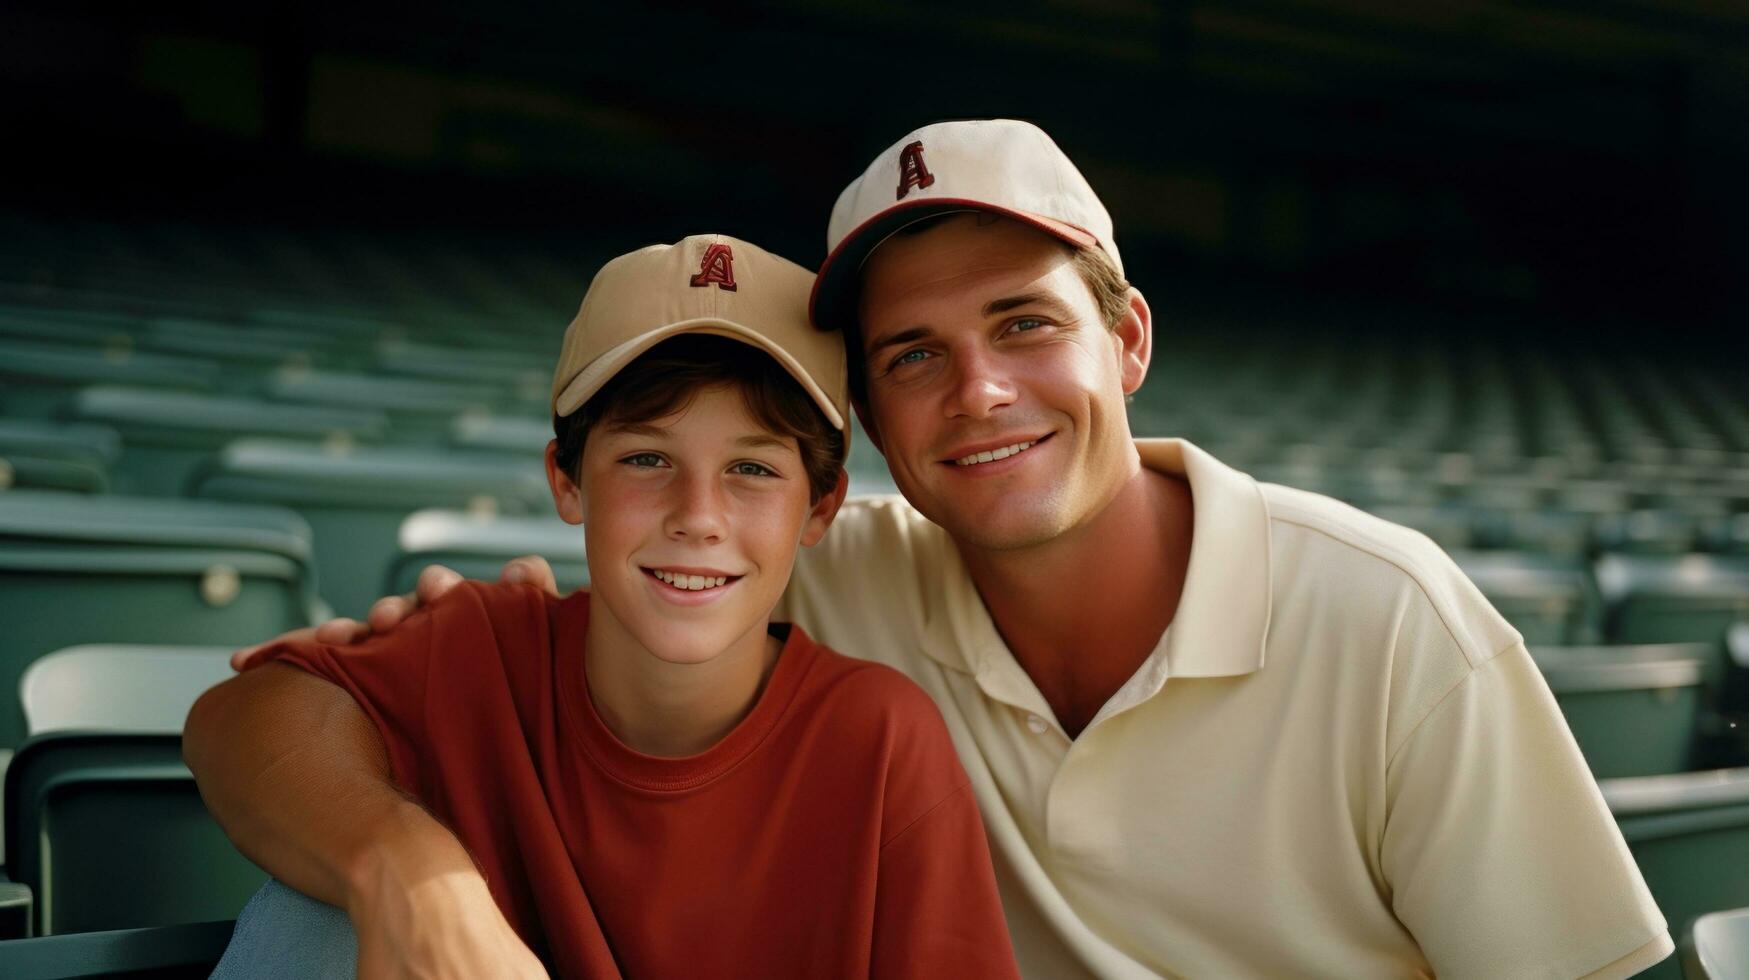 homem e filho em beisebol jogos foto